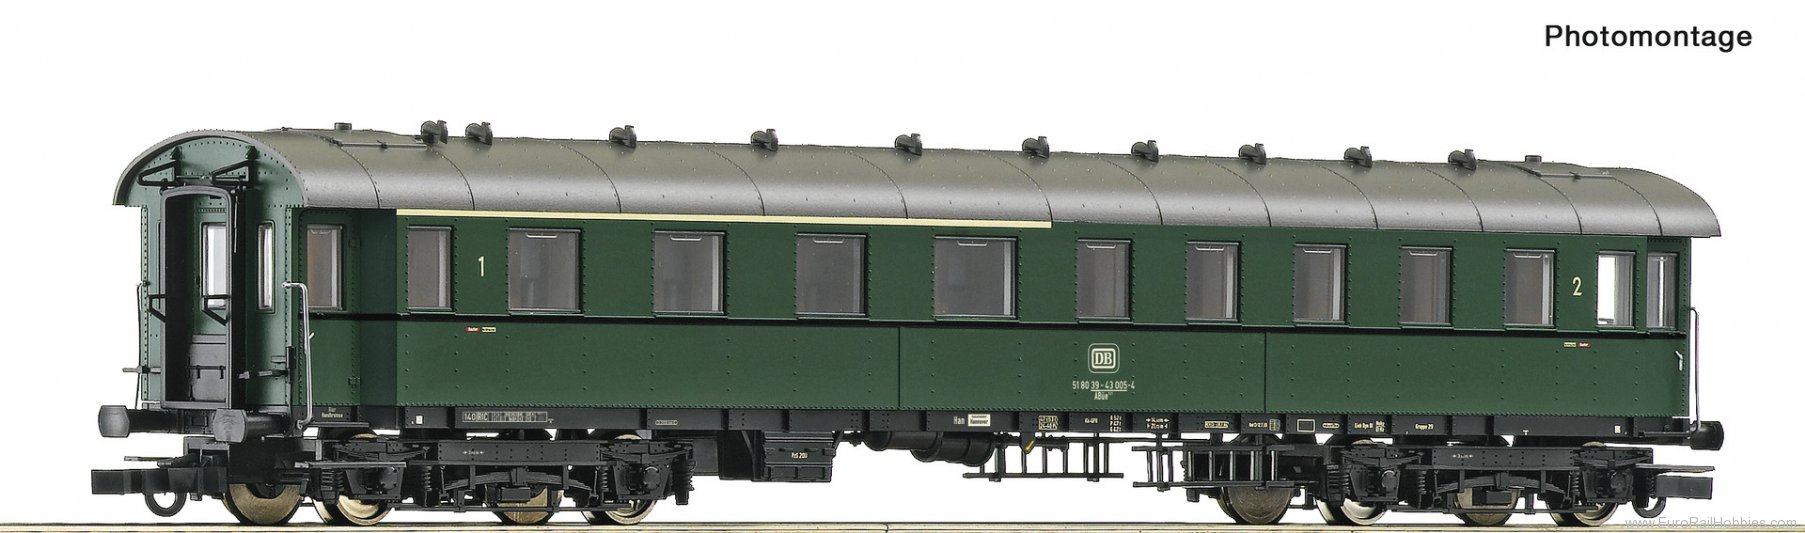 Roco 74865 1st/2nd class standard express train coach, D